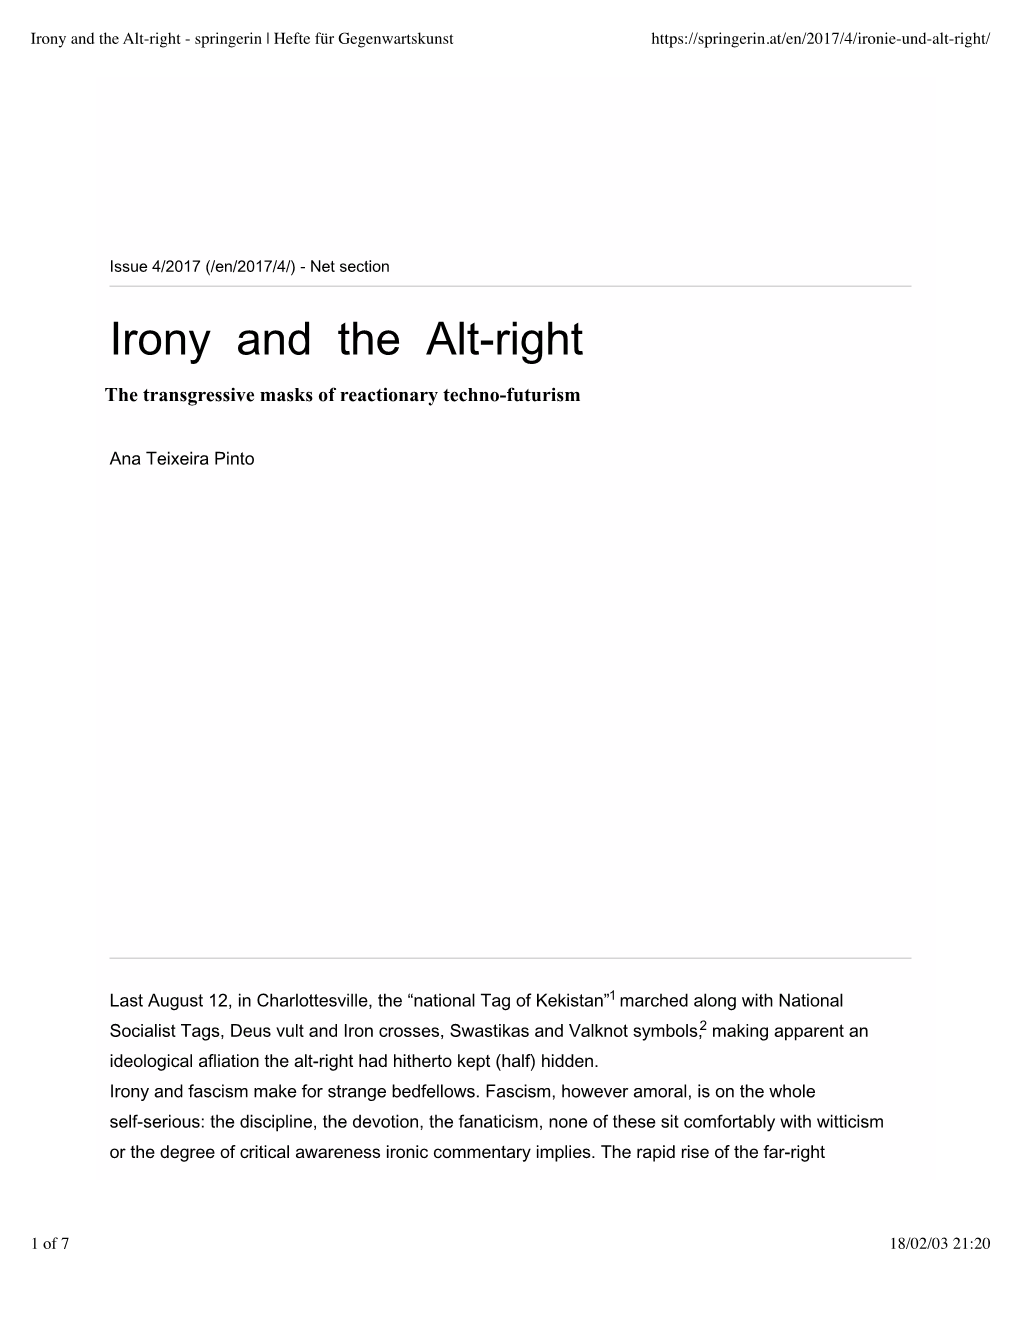 Irony and the Alt-Right - Springerin | Hefte Für Gegenwartskunst